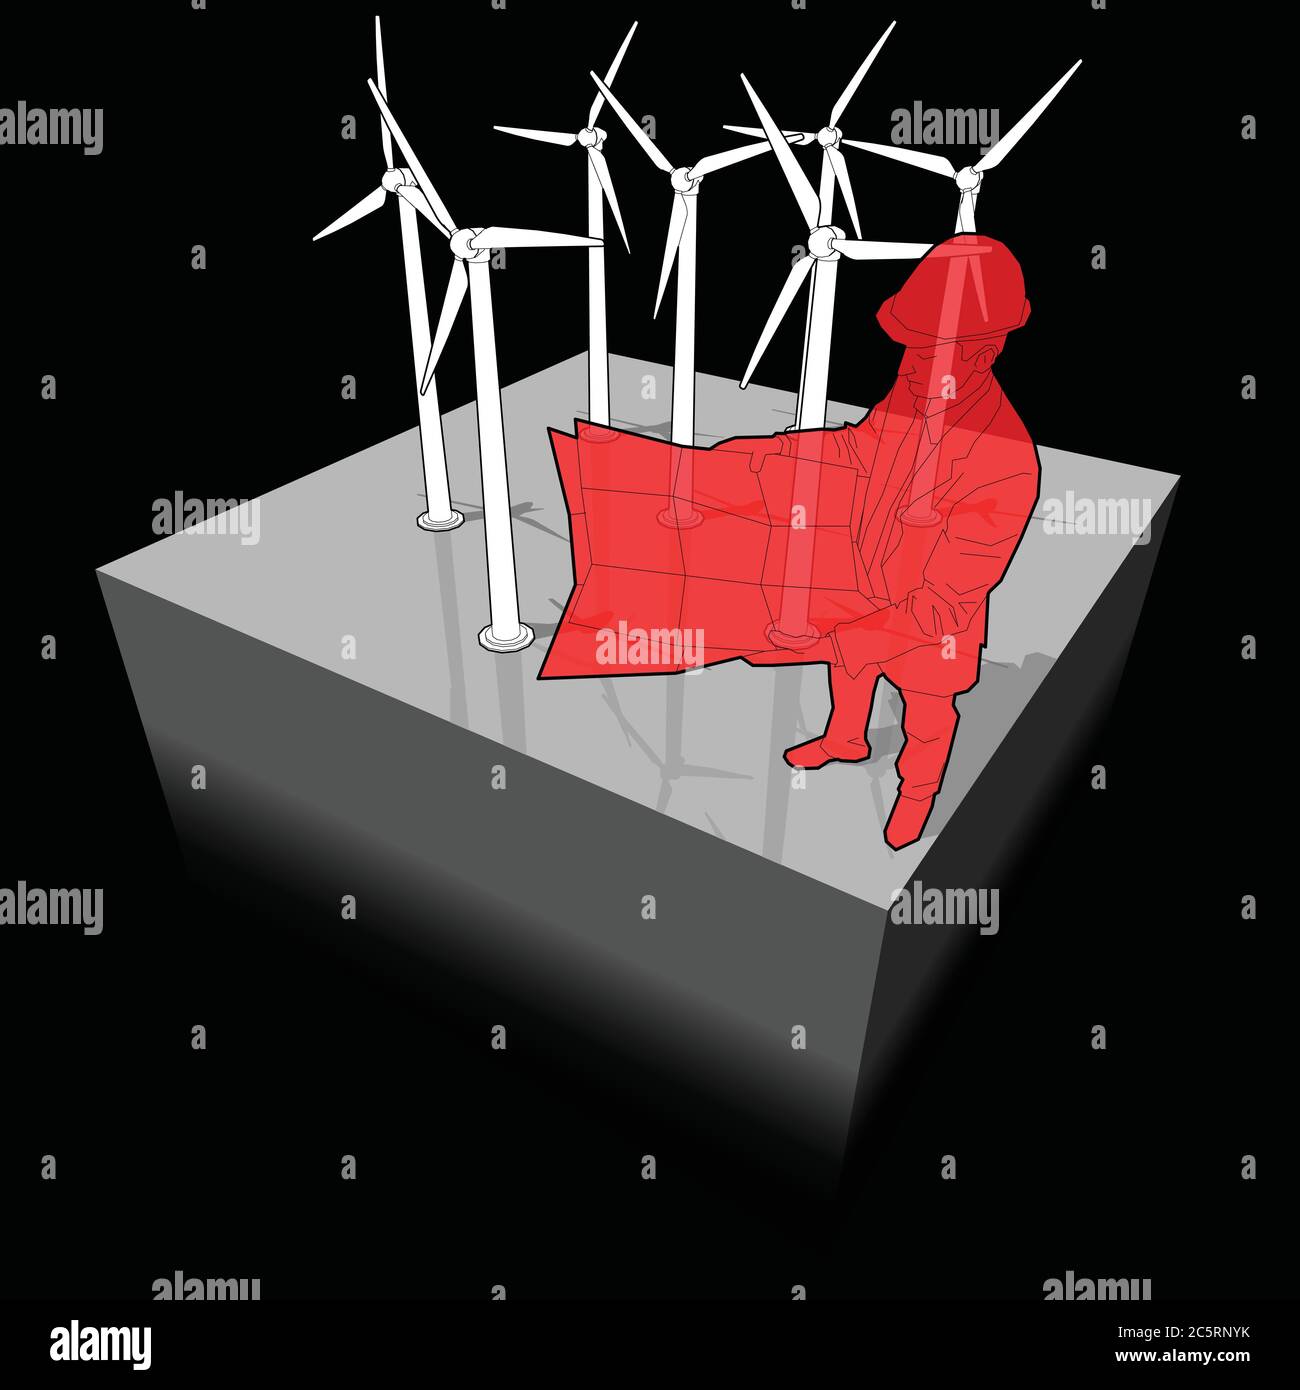 Schéma d'une ferme éolienne avec plan de conception d'architecte ou d'ingénieur Illustration de Vecteur